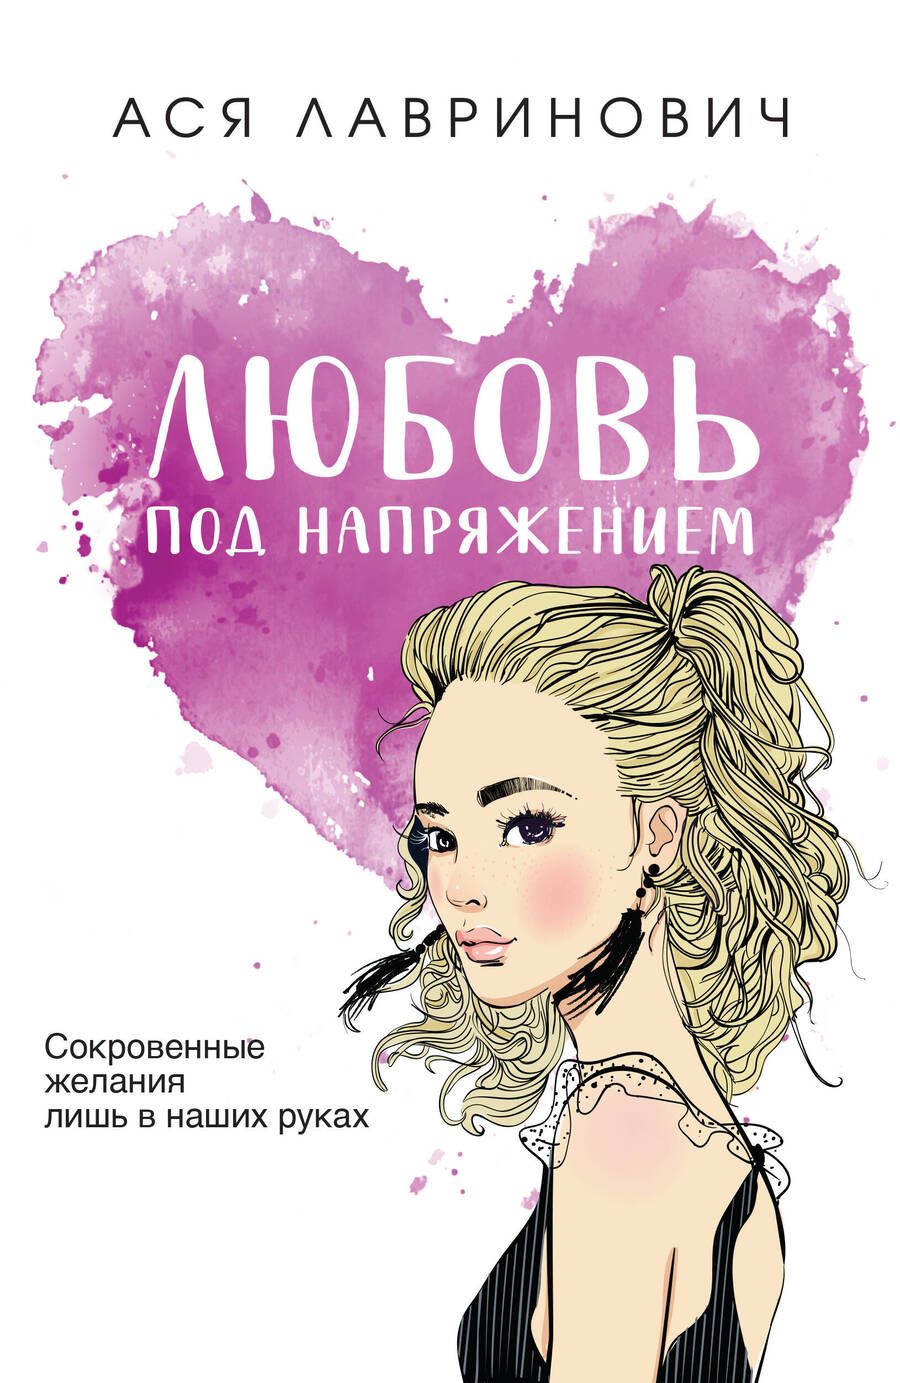 Обложка книги "Лавринович: Любовь под напряжением"